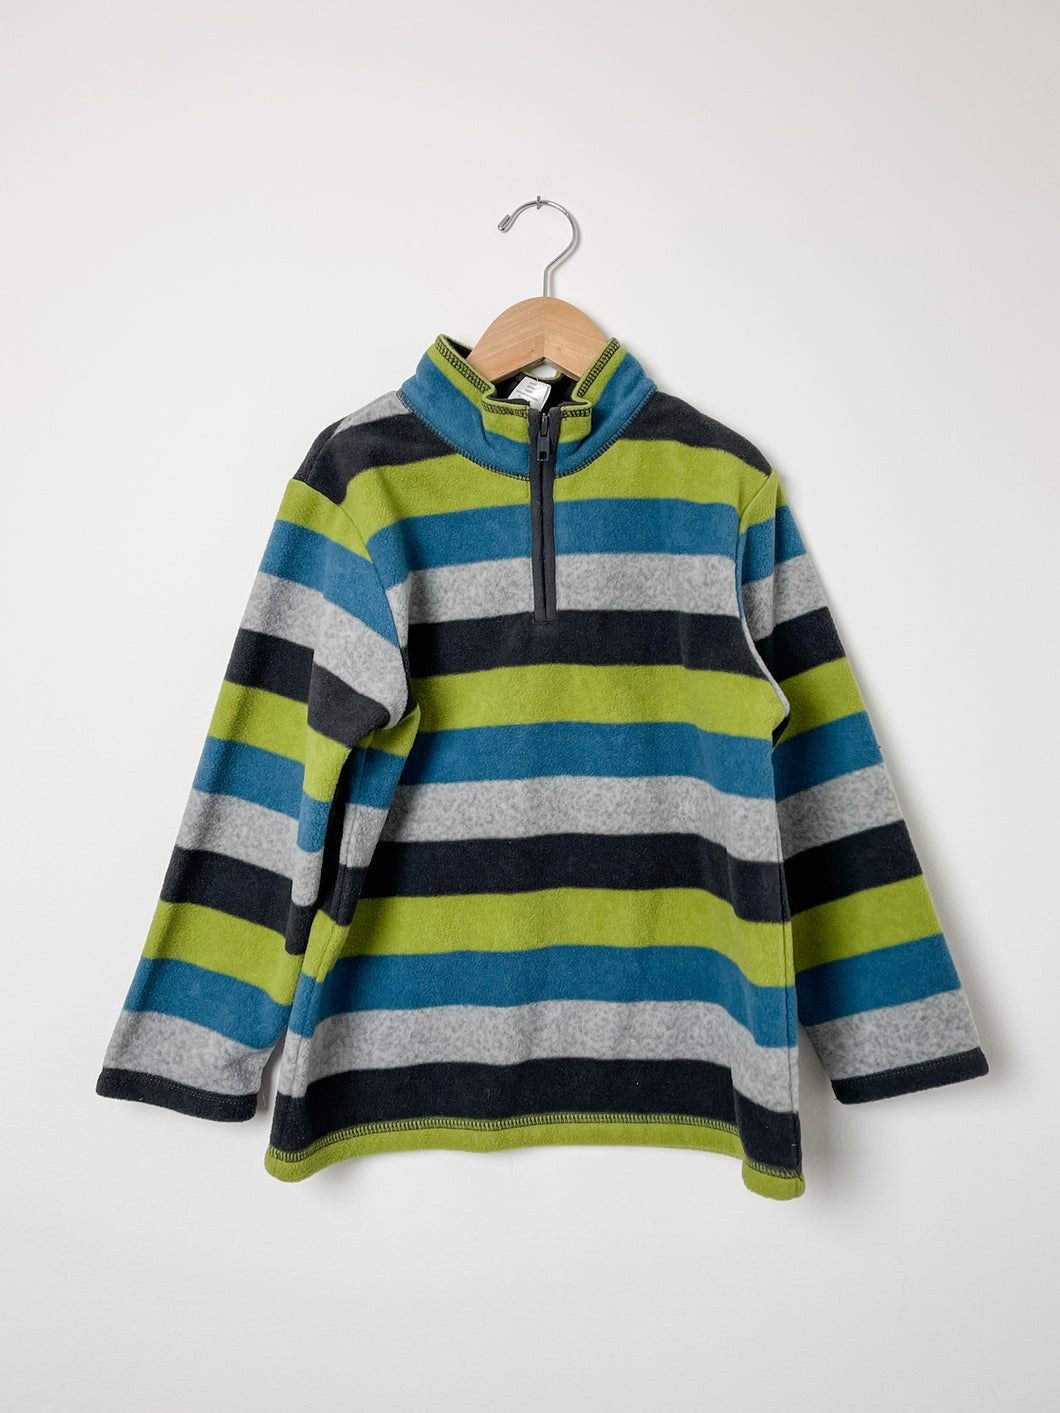 Striped Gymboree Fleece Sweater Size 5-6 – Jill and Joey